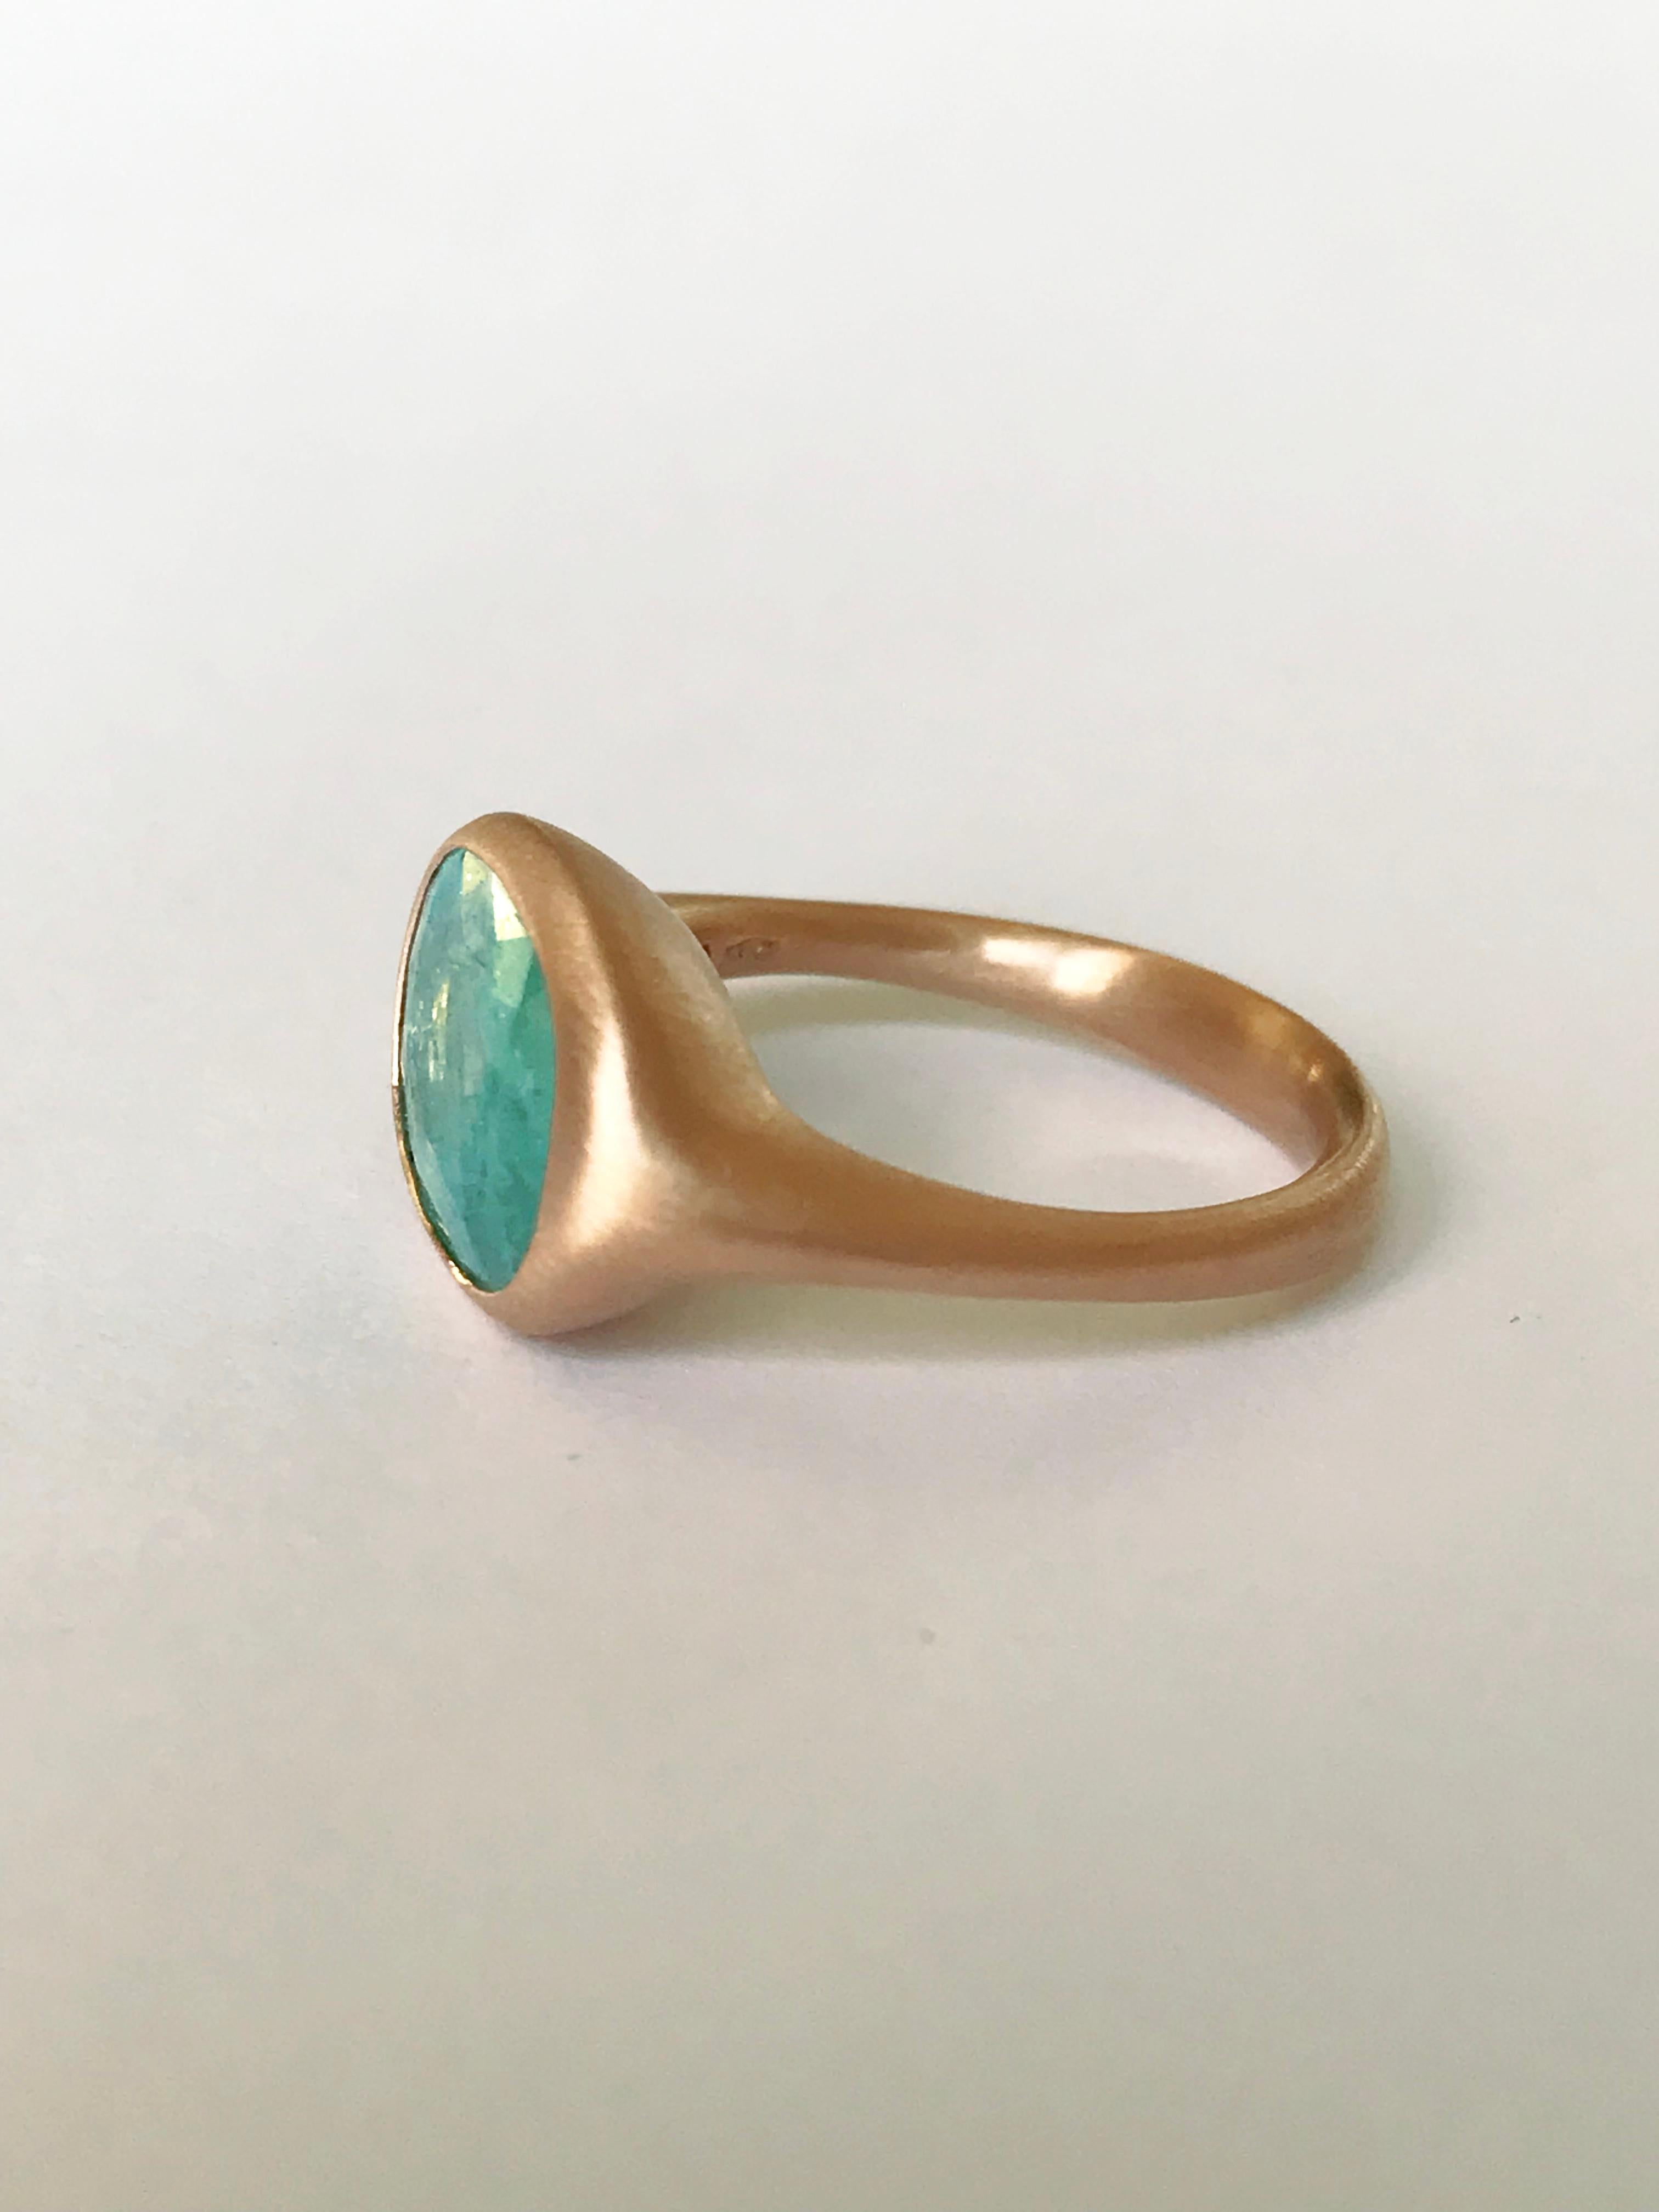 Dalben Design 3.79 carat Paraiba Tourmaline Rose Gold Ring For Sale 5